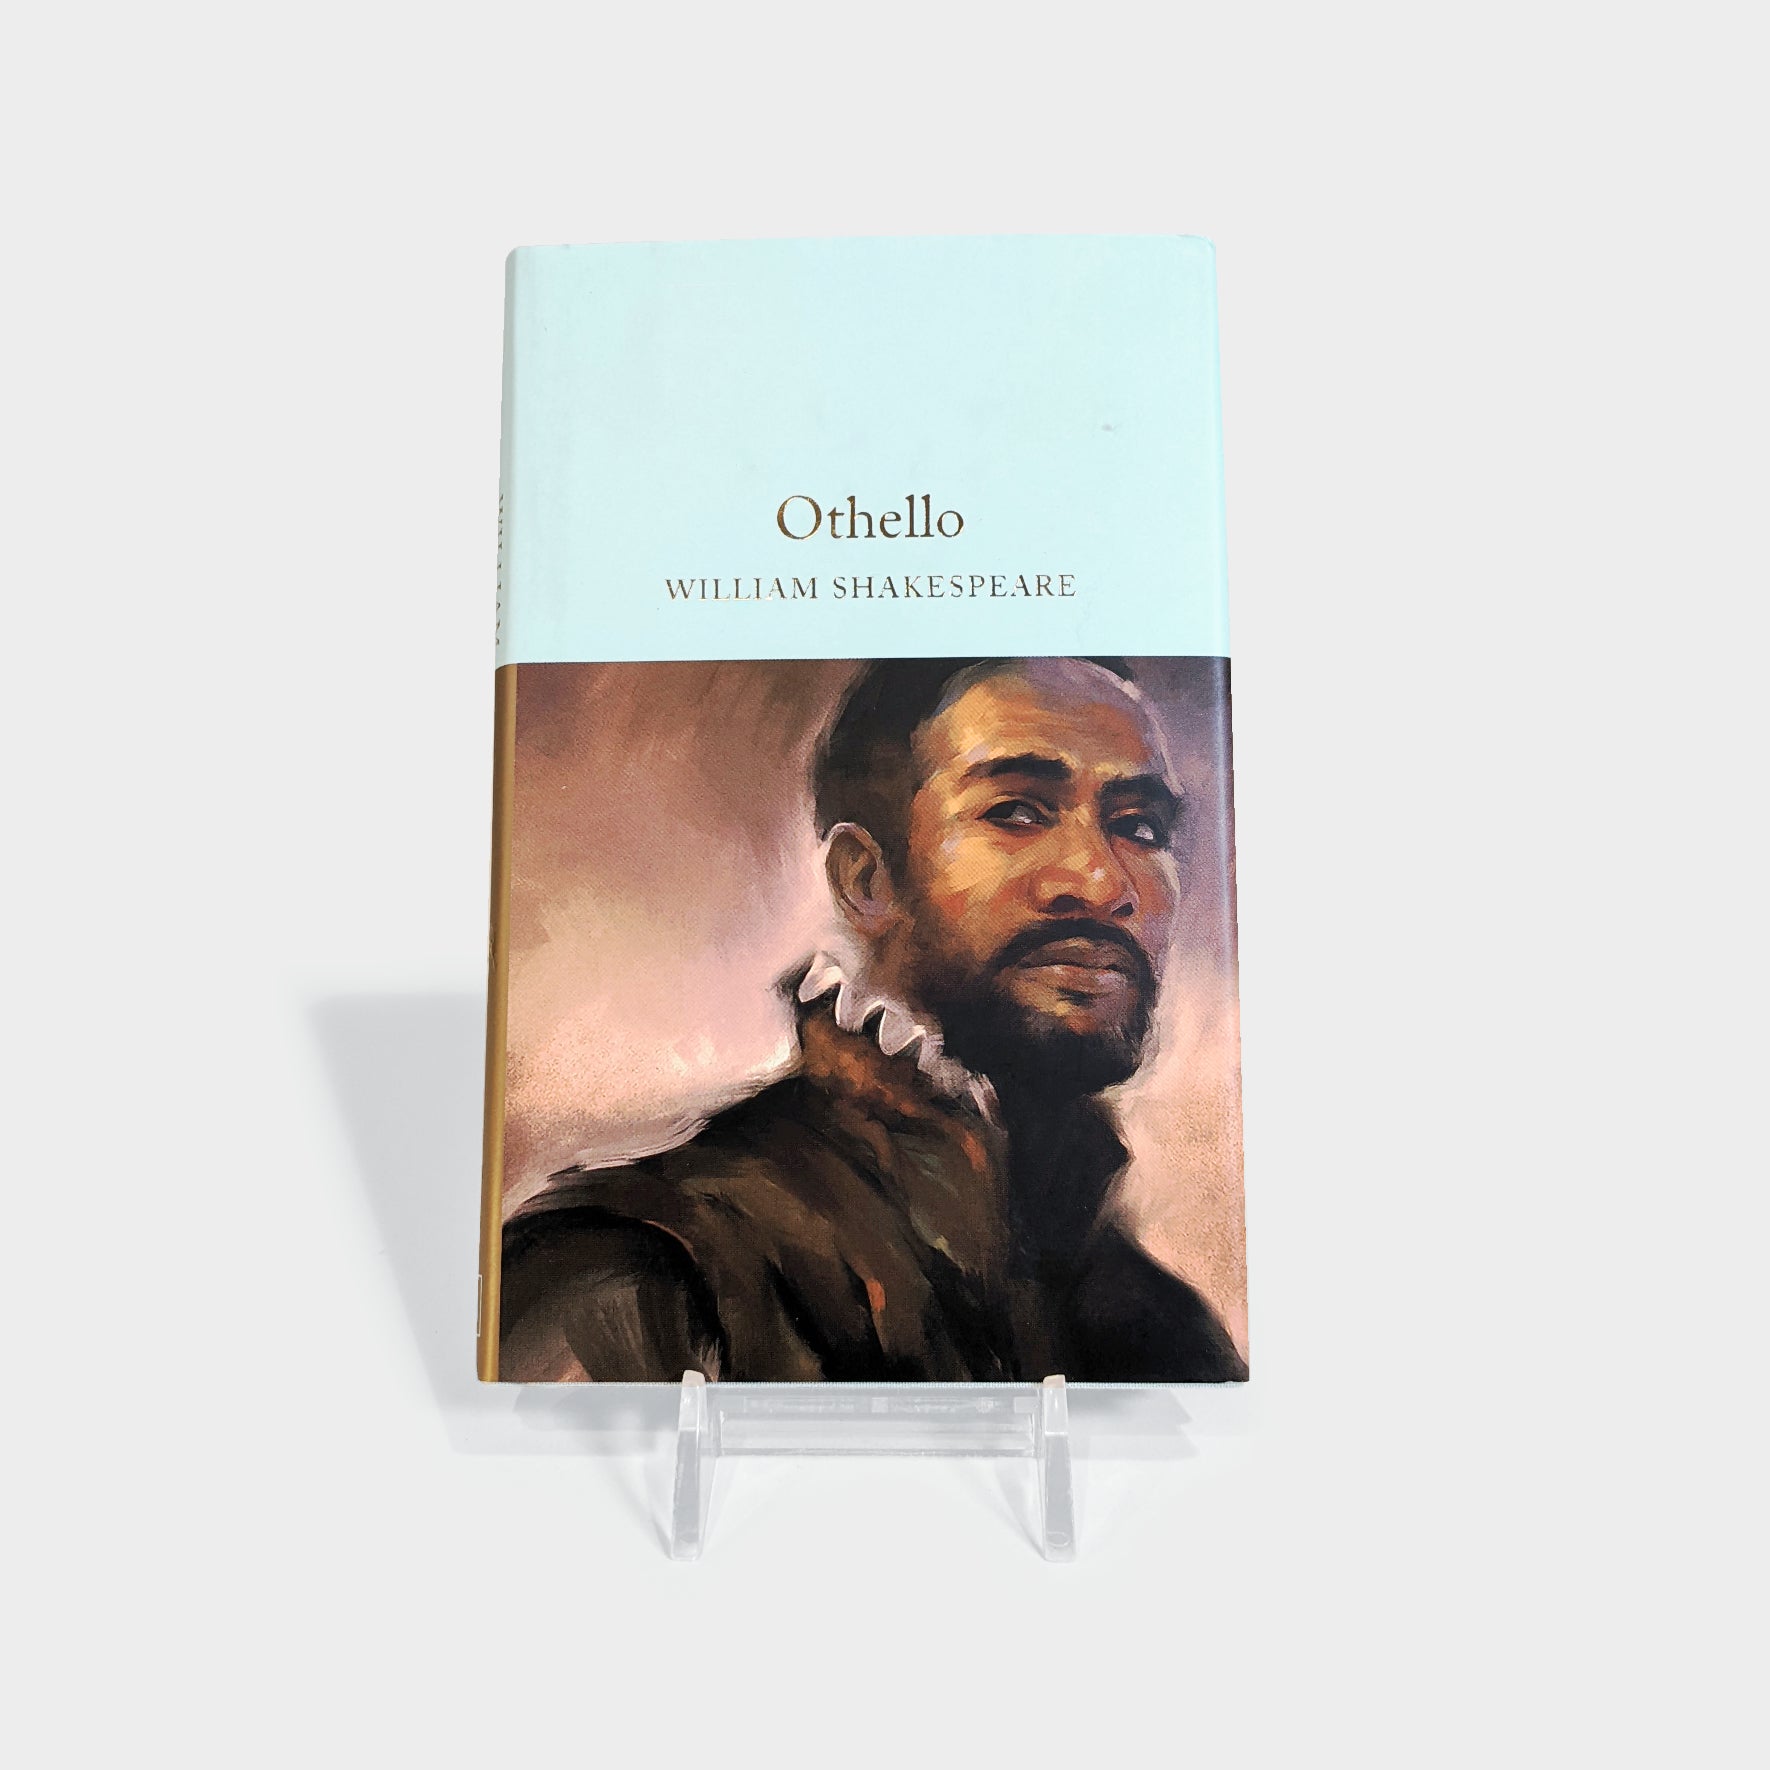 othello book cover